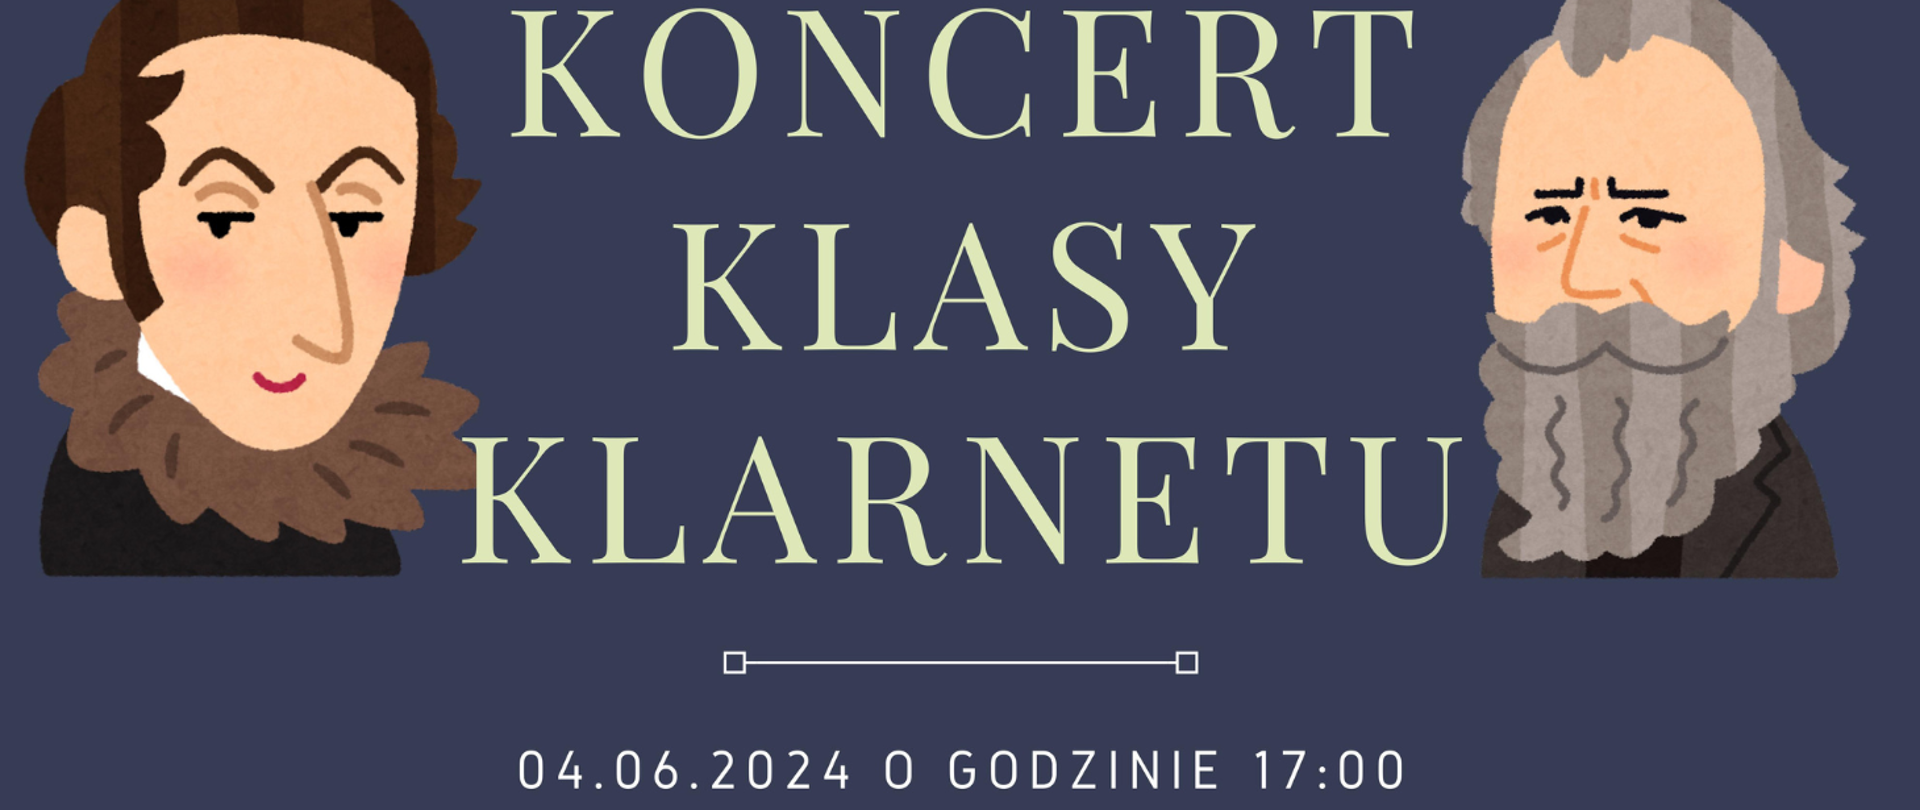 Na granatowy tle z lewej i prawej strony grafiki dwóch mężczyzn na środku tekst banera: Koncert klasy klarnetu 04.06.2024 o godzinie 17:00.